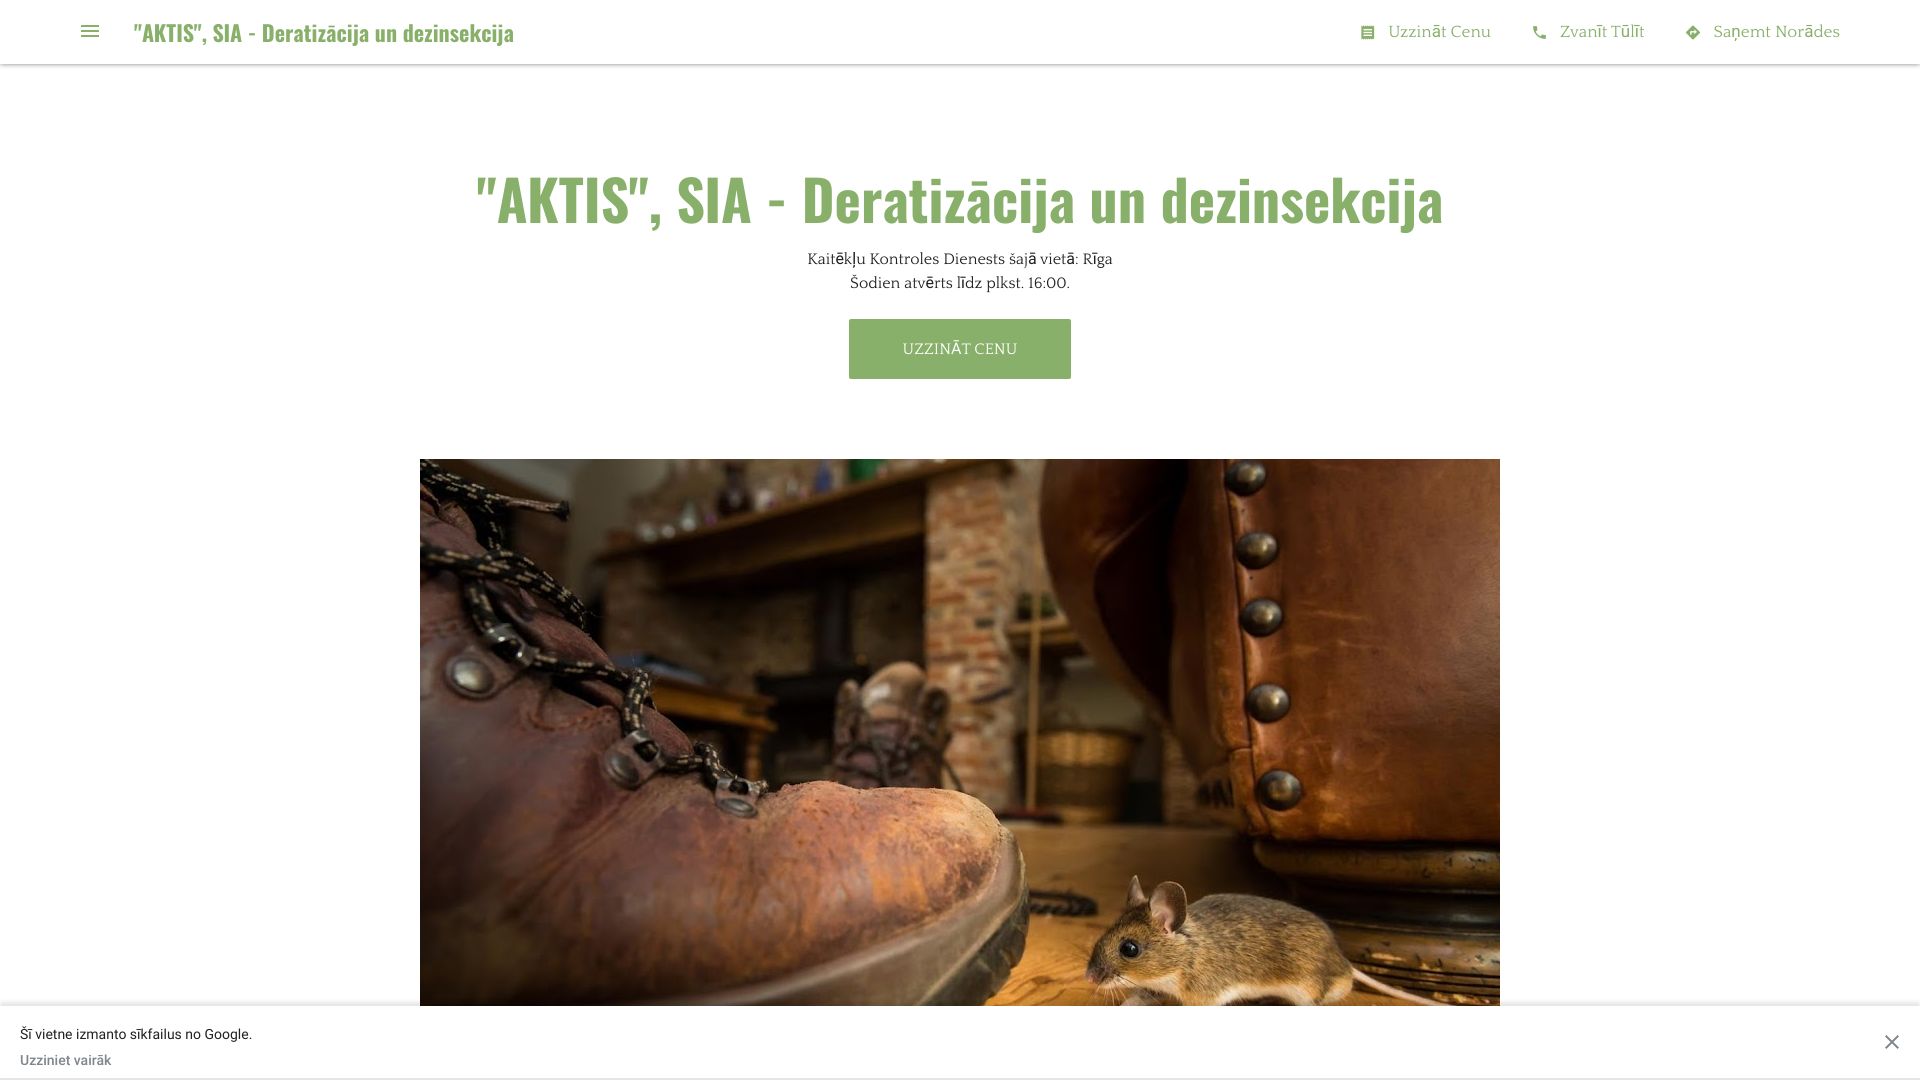 https://aktis-sia.business.site/